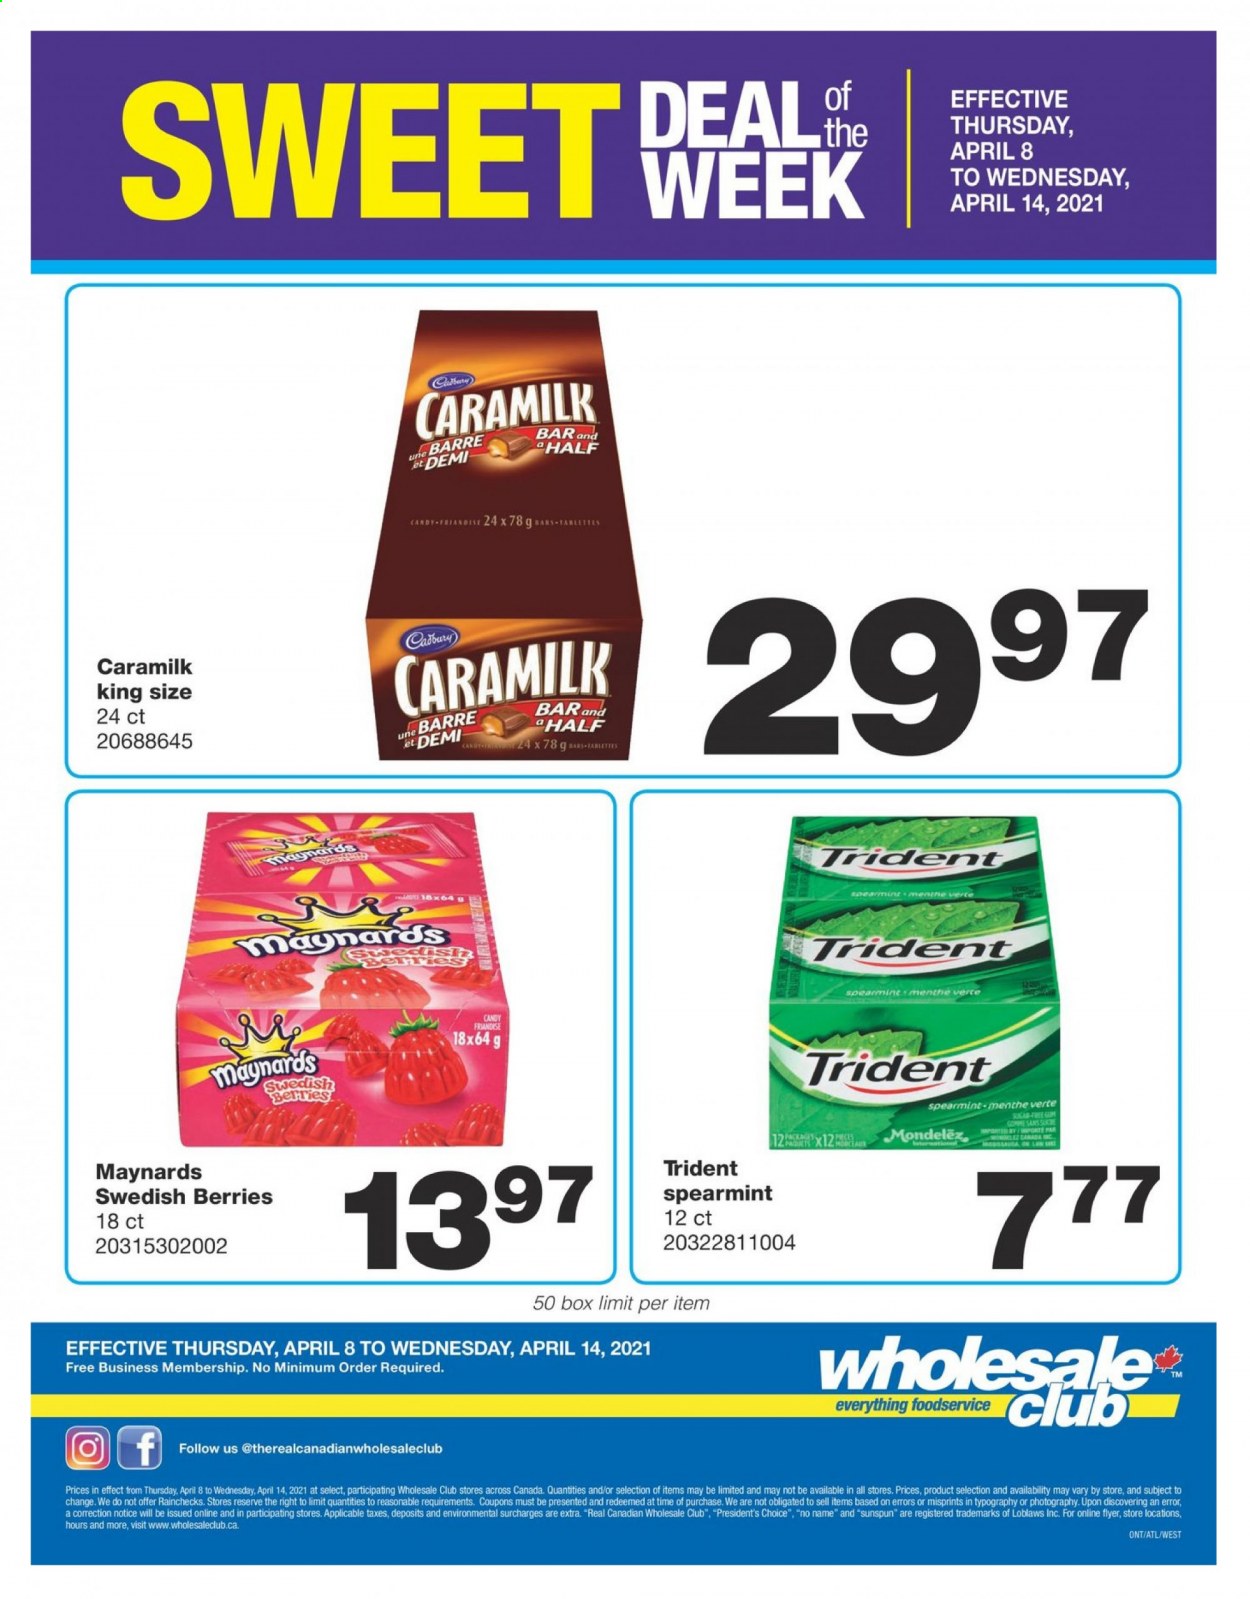 thumbnail - Wholesale Club Flyer - April 08, 2021 - April 14, 2021 - Sales products - No Name, Président, Cadbury, Trident, sugar. Page 1.